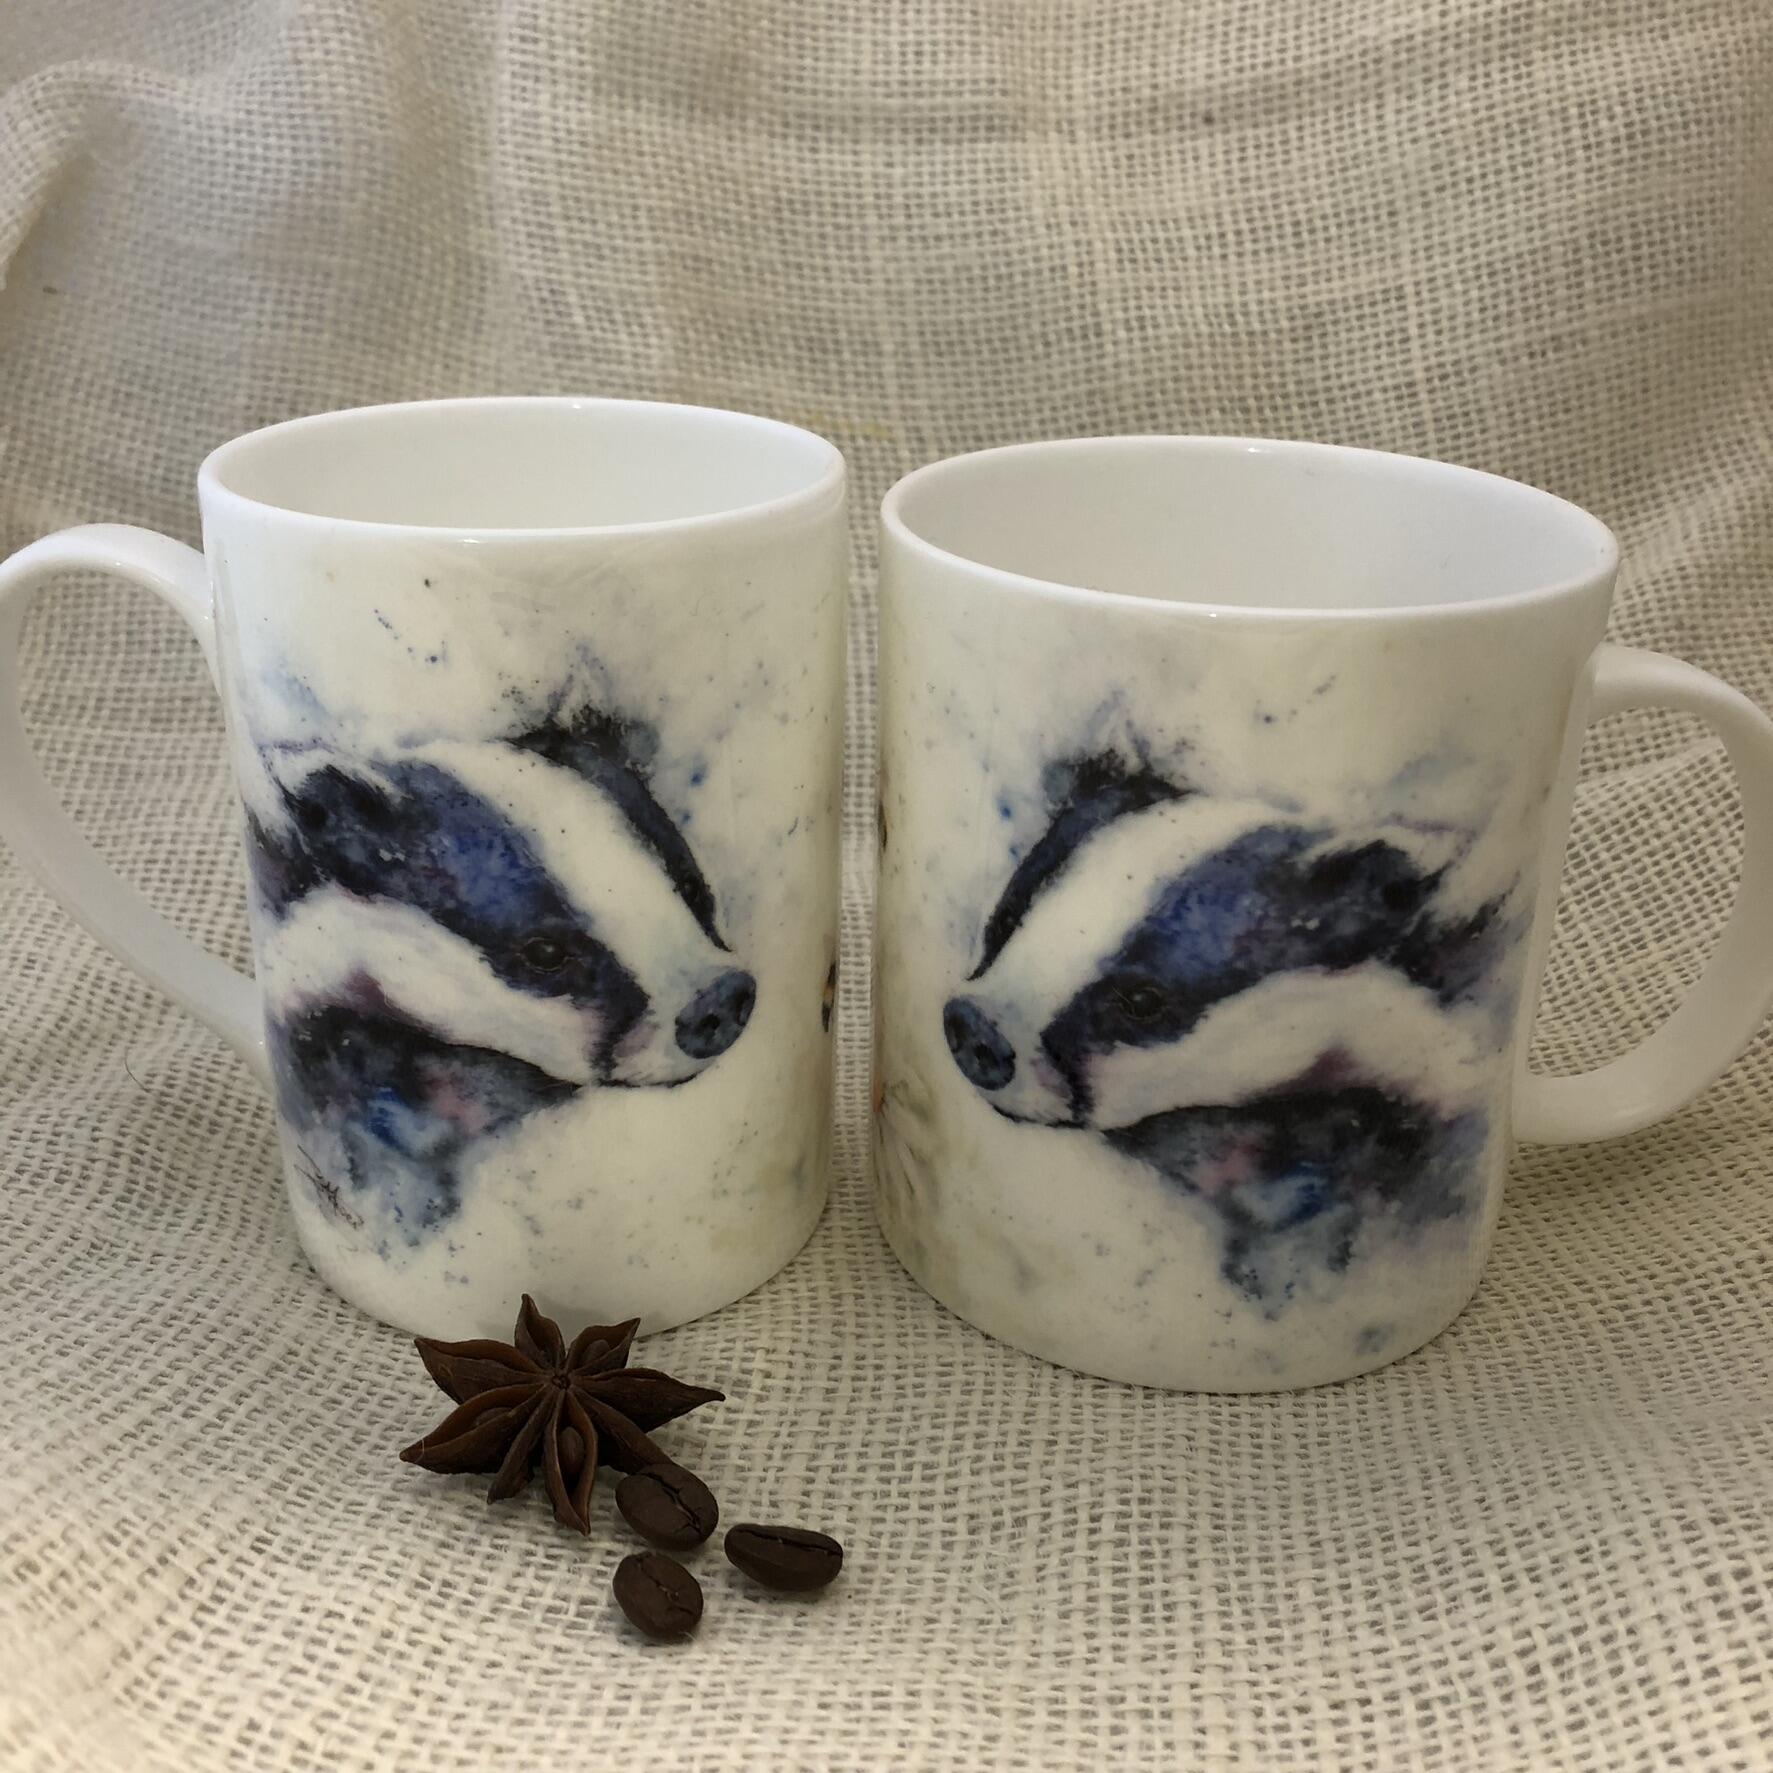 badger and bees mug